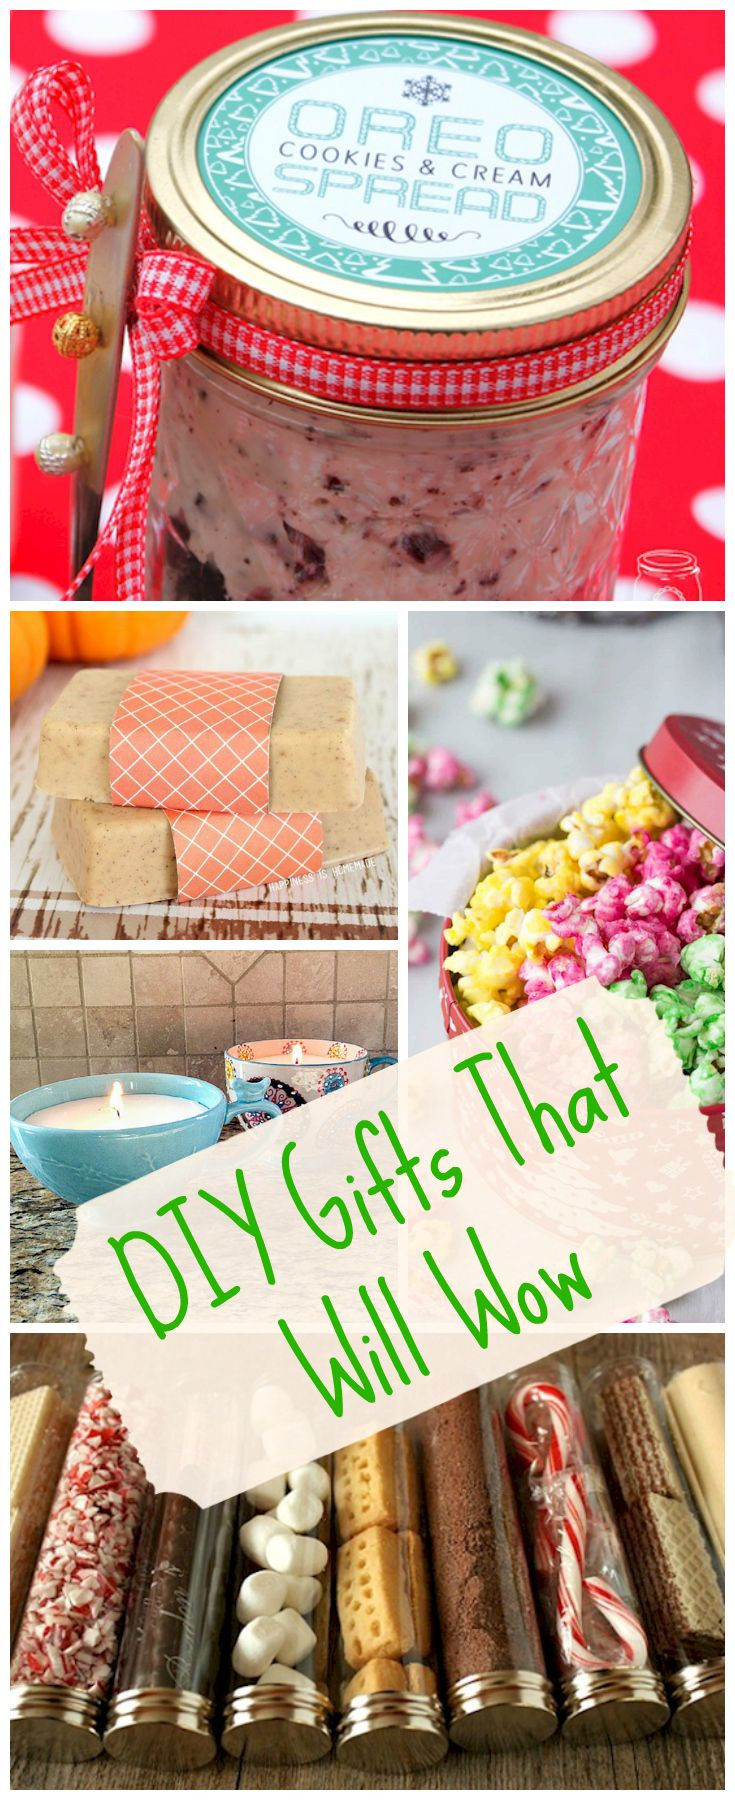 Pinterest DIY Christmas Gifts
 Best 25 Homemade t baskets ideas on Pinterest